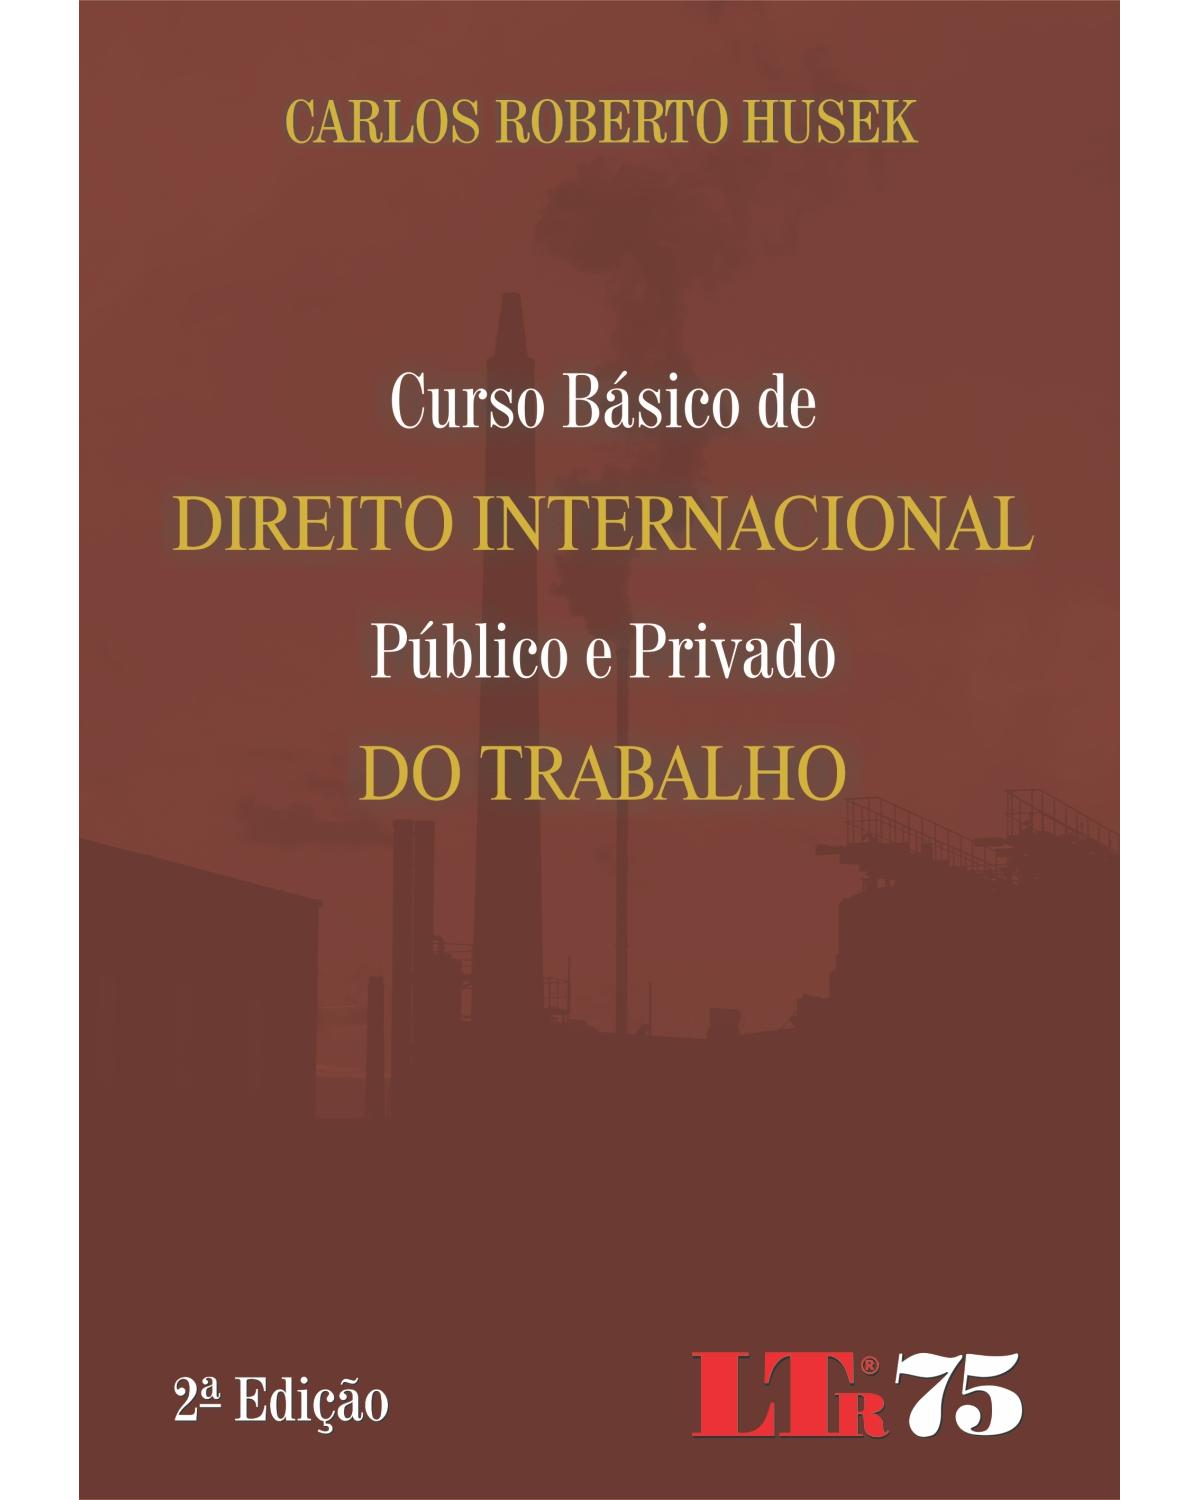 Curso básico de direito internacional público e privado do trabalho - 2ª Edição